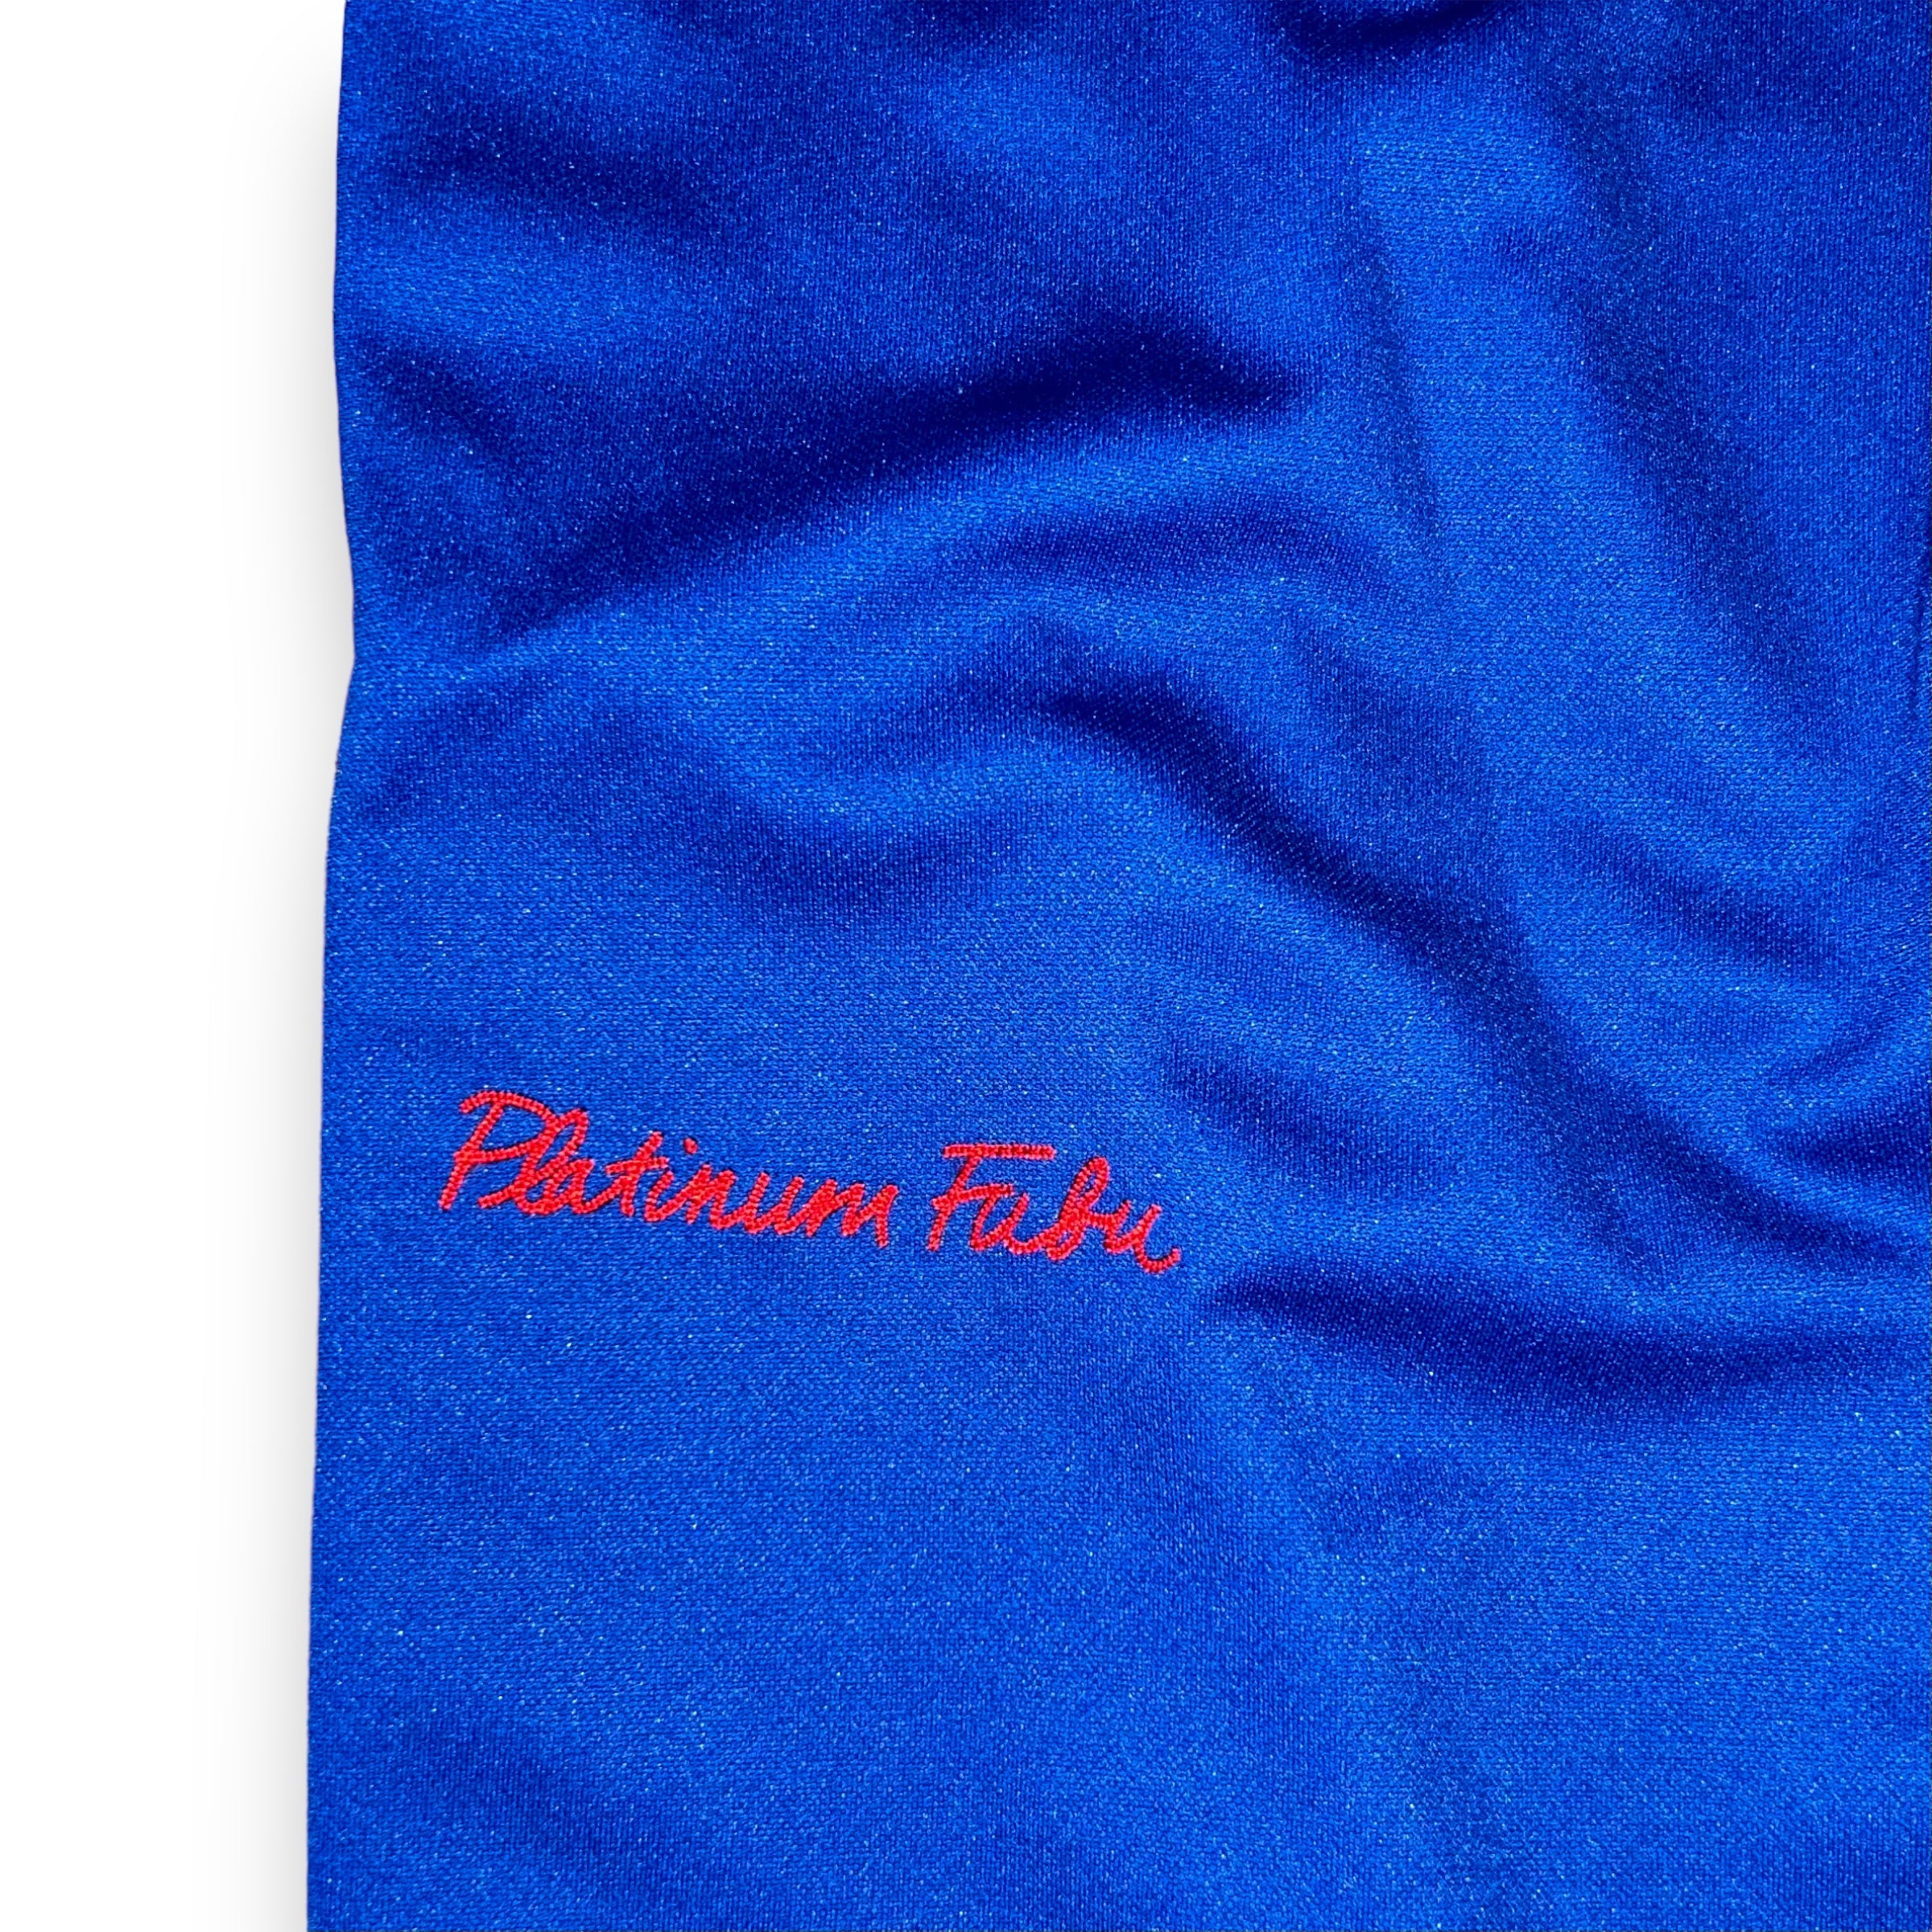 Platinum Fubu Harlem Globetrotters Vintage Pants (L)